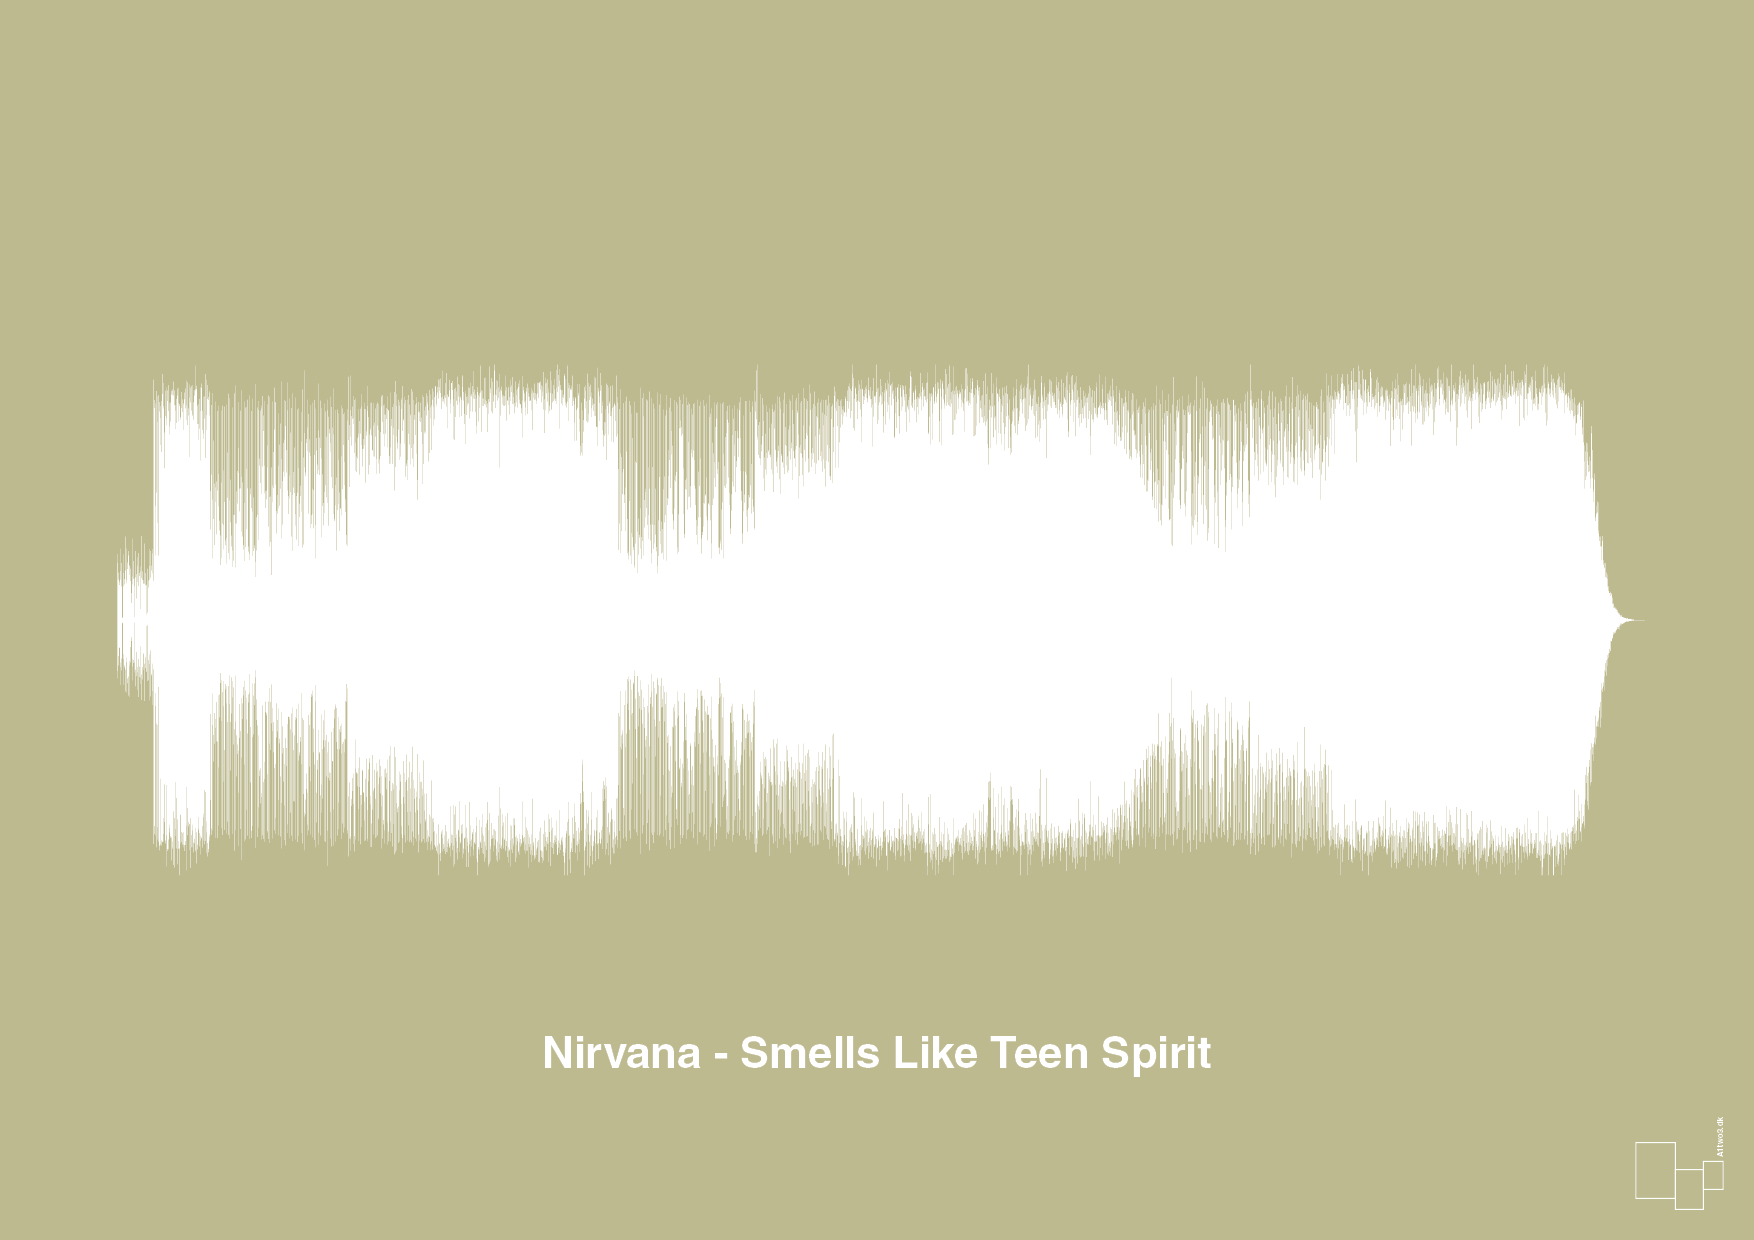 nirvana - smells like teen spirit - Plakat med Musik i Back to Nature